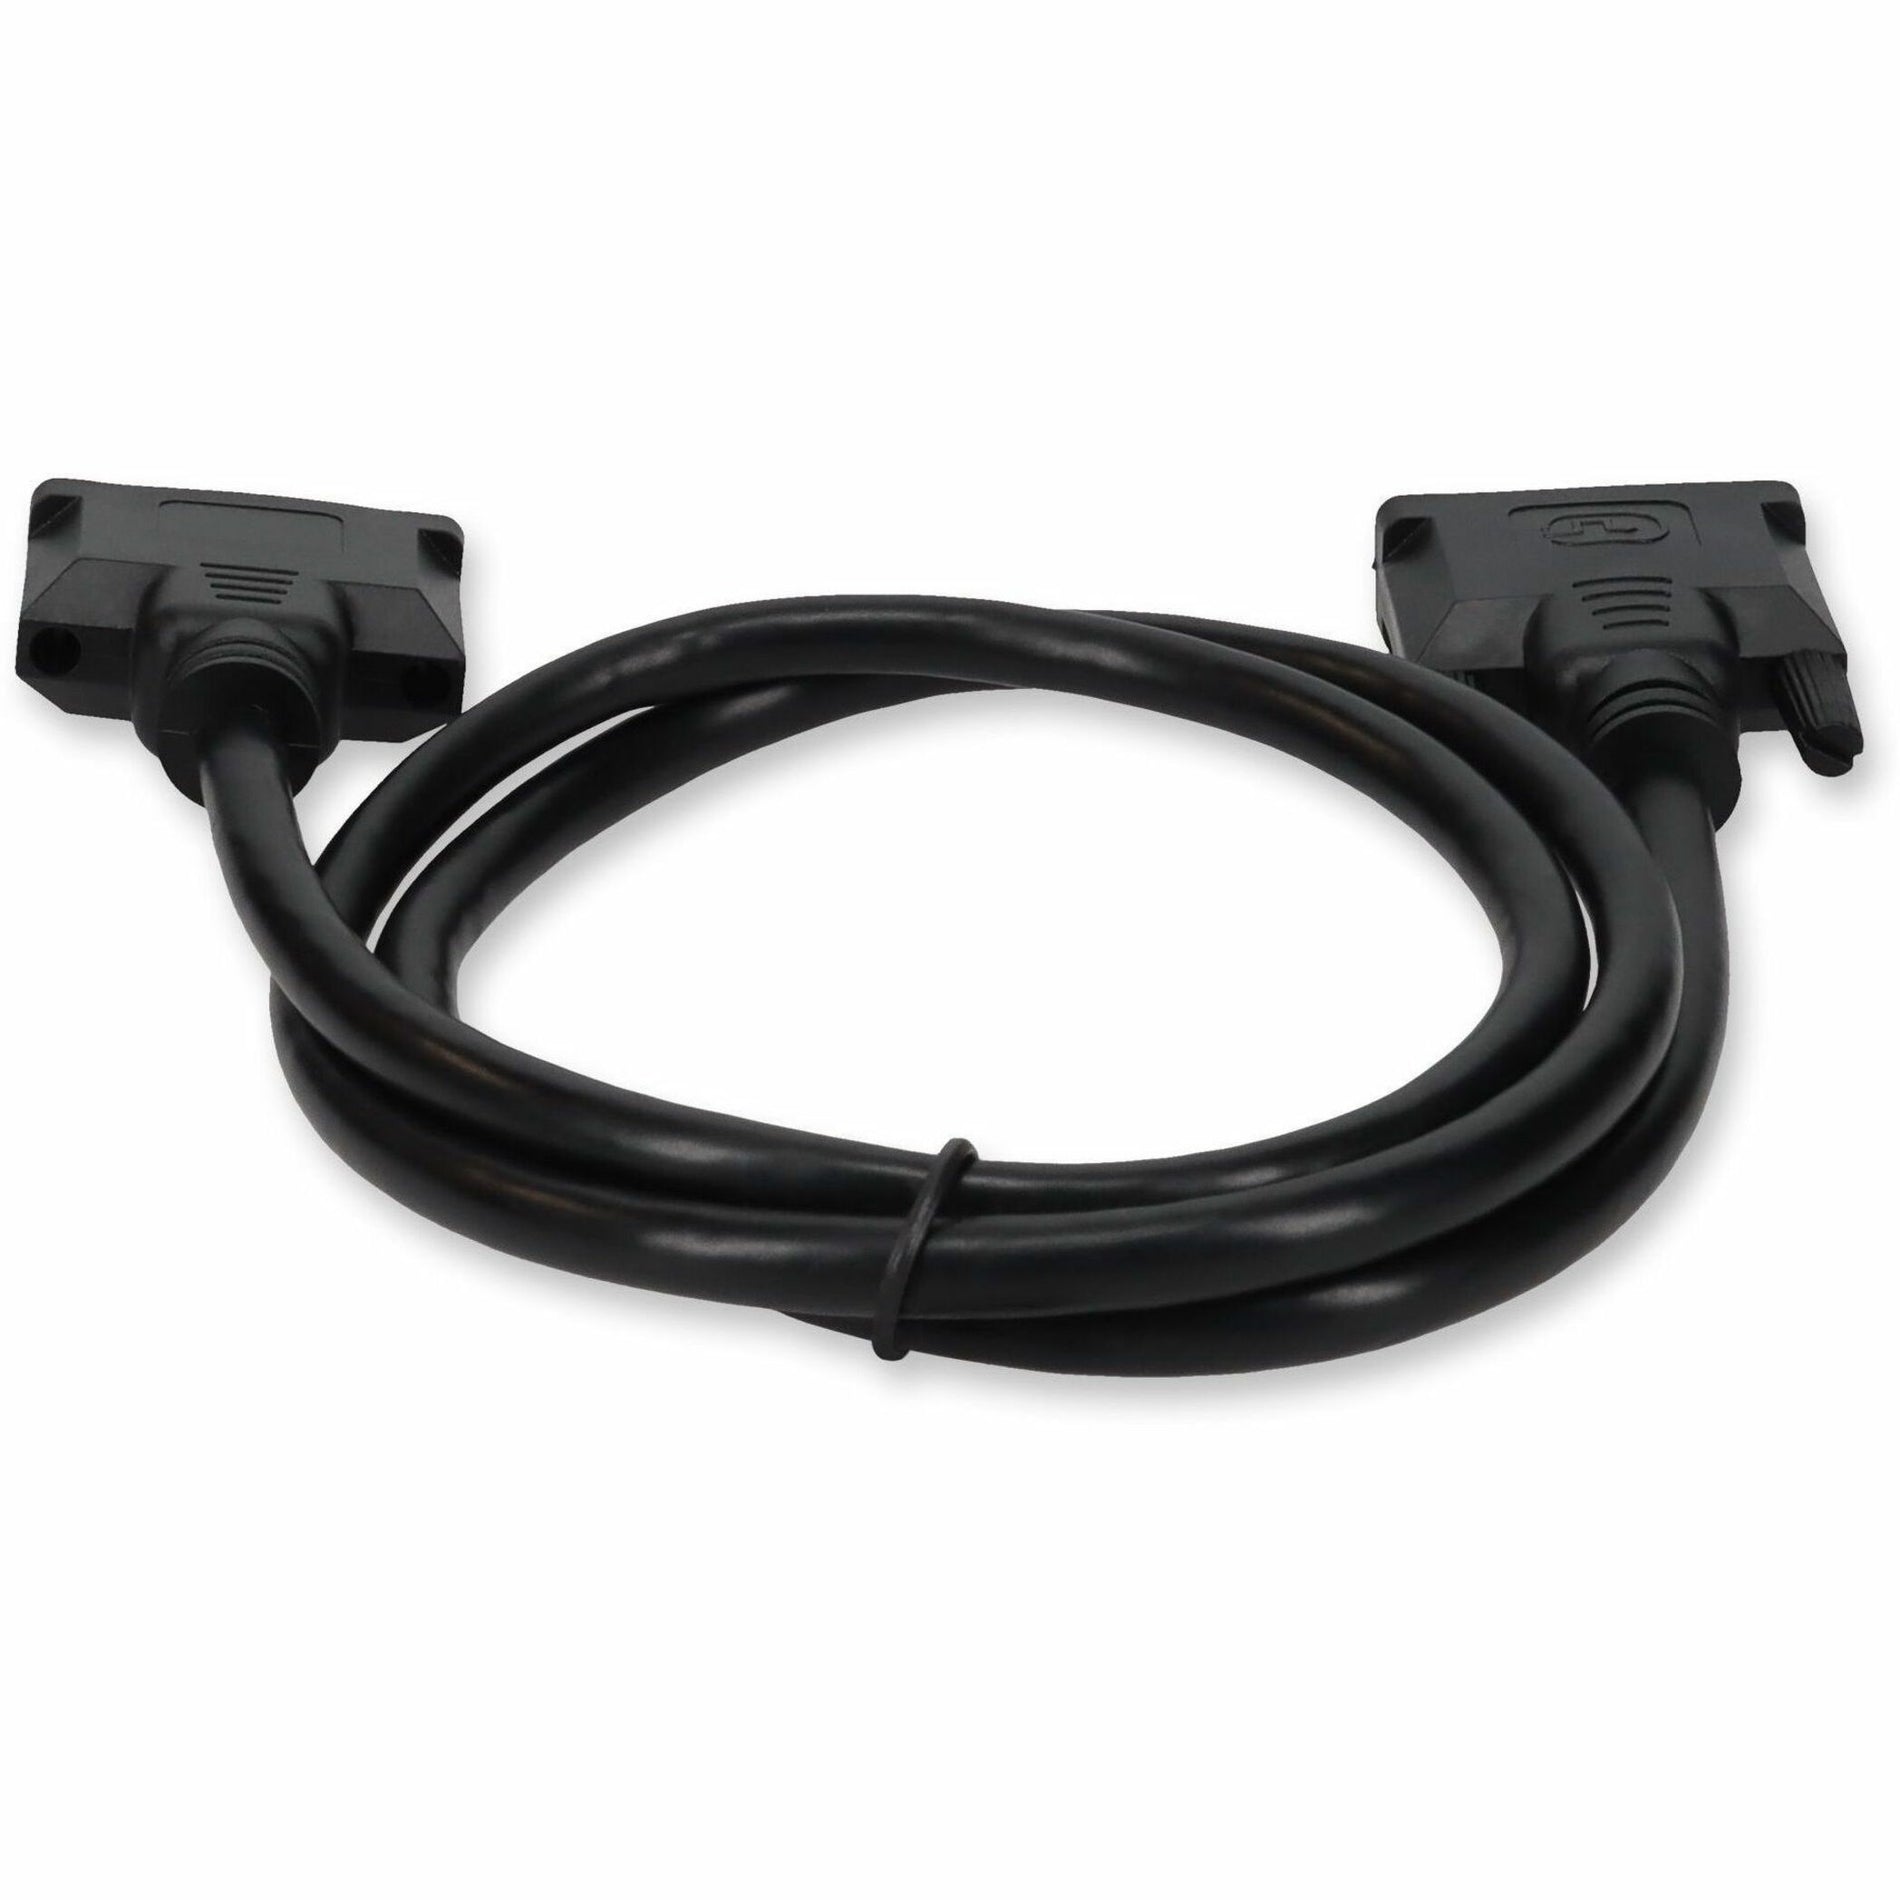 6ft (18M) DVI-D zu DVI-D Dual Link Kabel - Stecker auf Stecker Hochwertige Videoübertragung